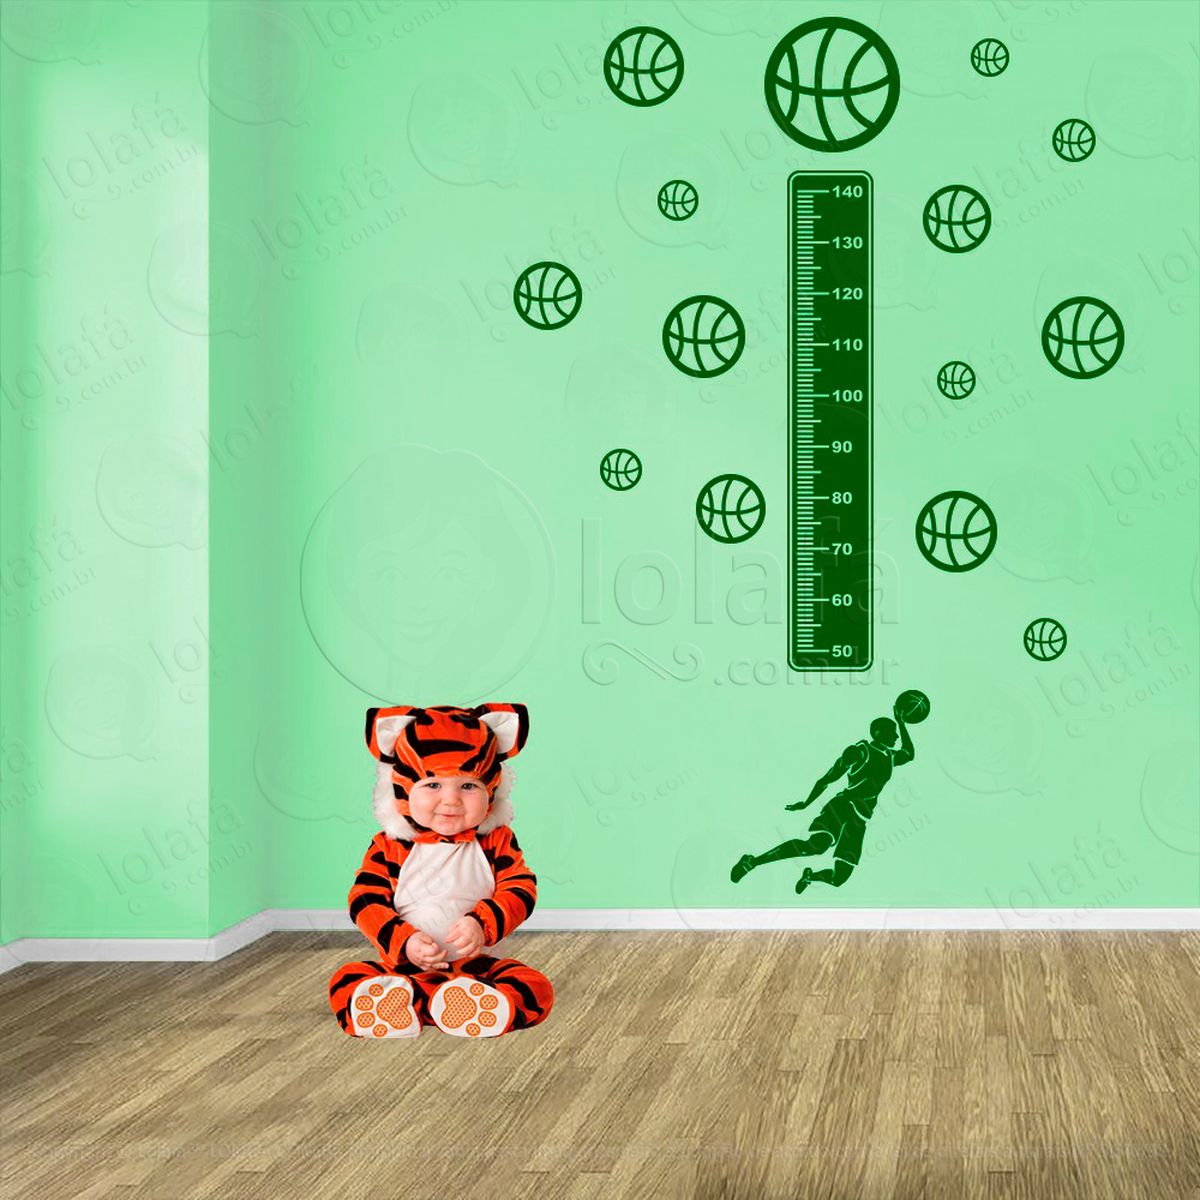 basquetebol e bolas de basquete adesivo régua de crescimento infantil, medidor de altura para quarto, porta e parede - mod:247